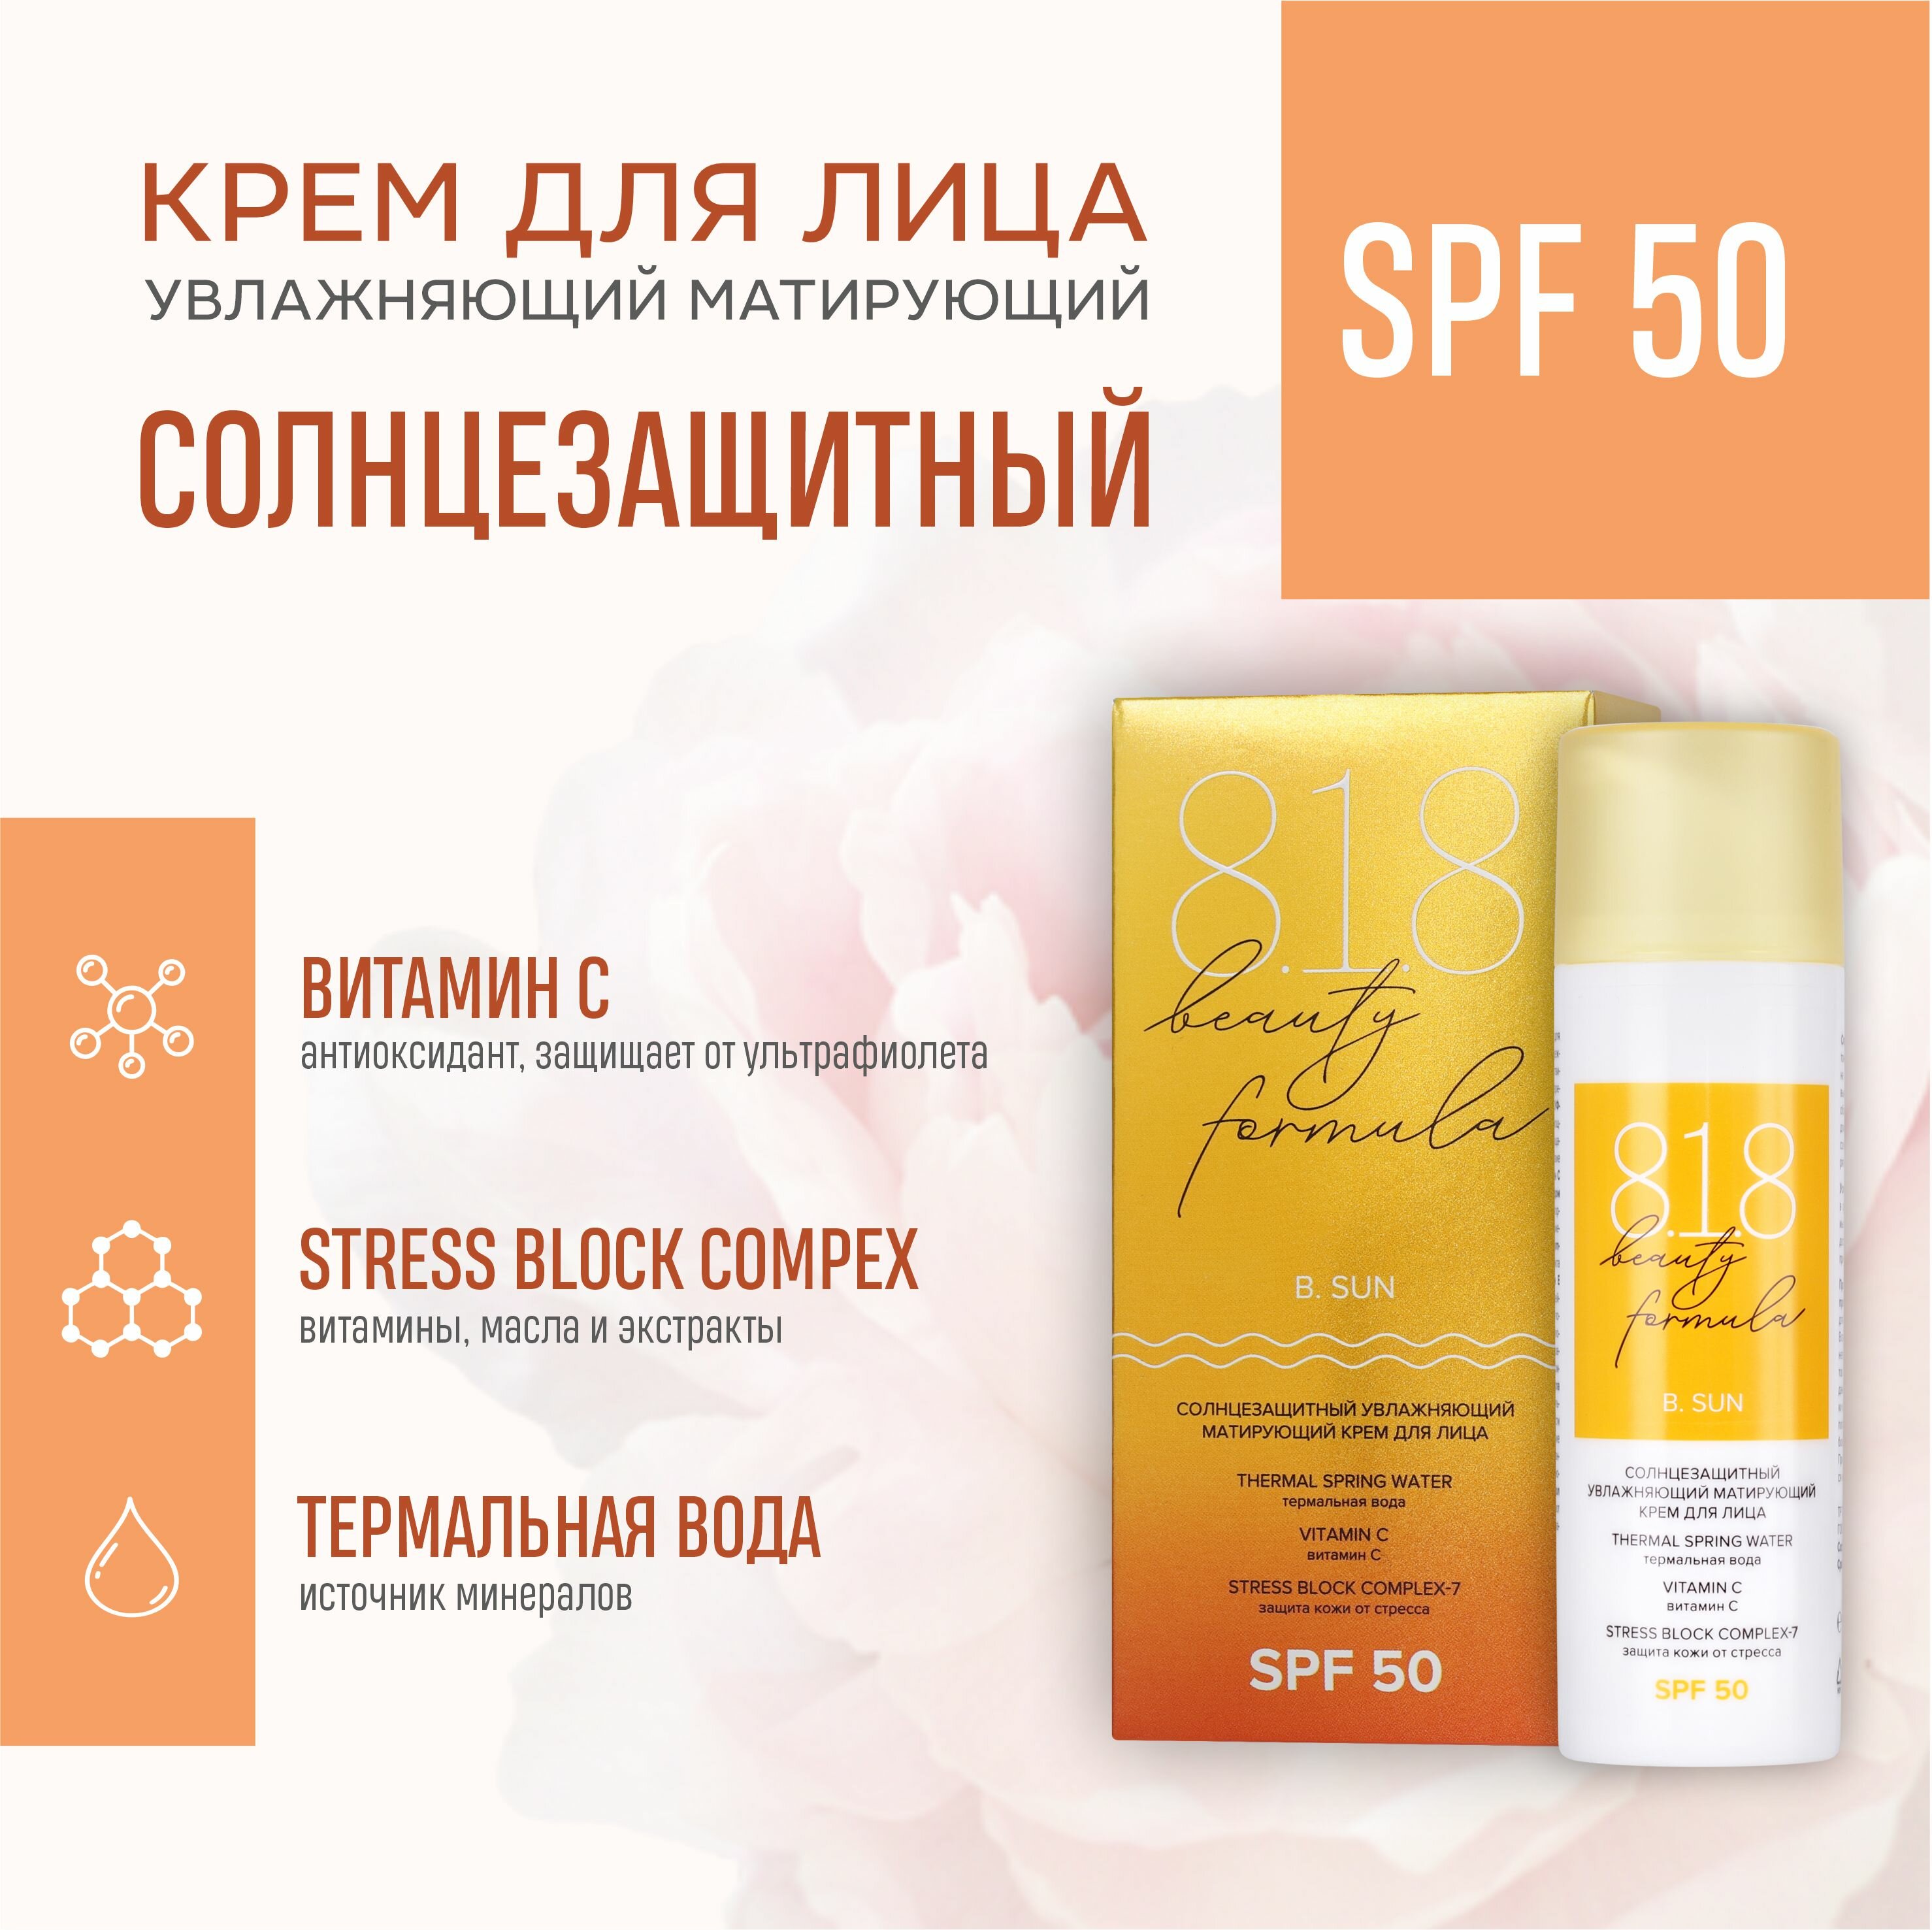 Солнцезащитный матирующий крем для лица 818 beauty formula SPF 50 50 мл a pieu крем для лица pure block солнцезащитный spf 50 матирующий 50